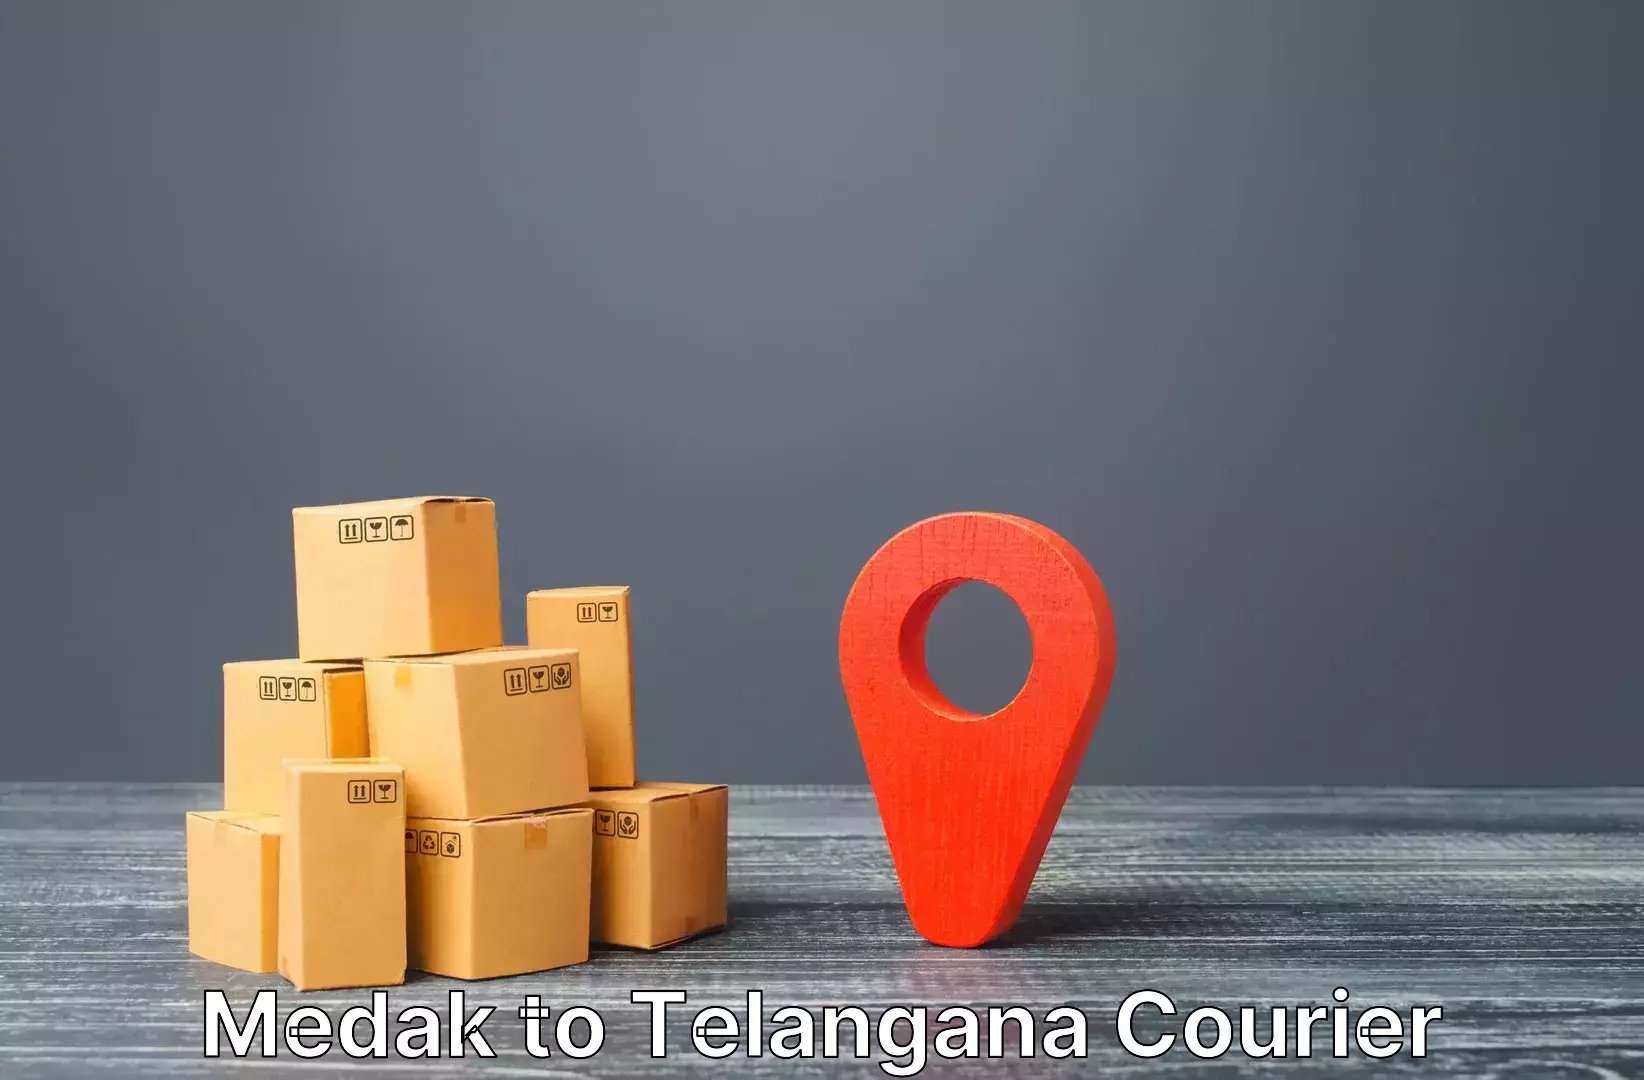 Luggage shipment tracking Medak to Vemulawada